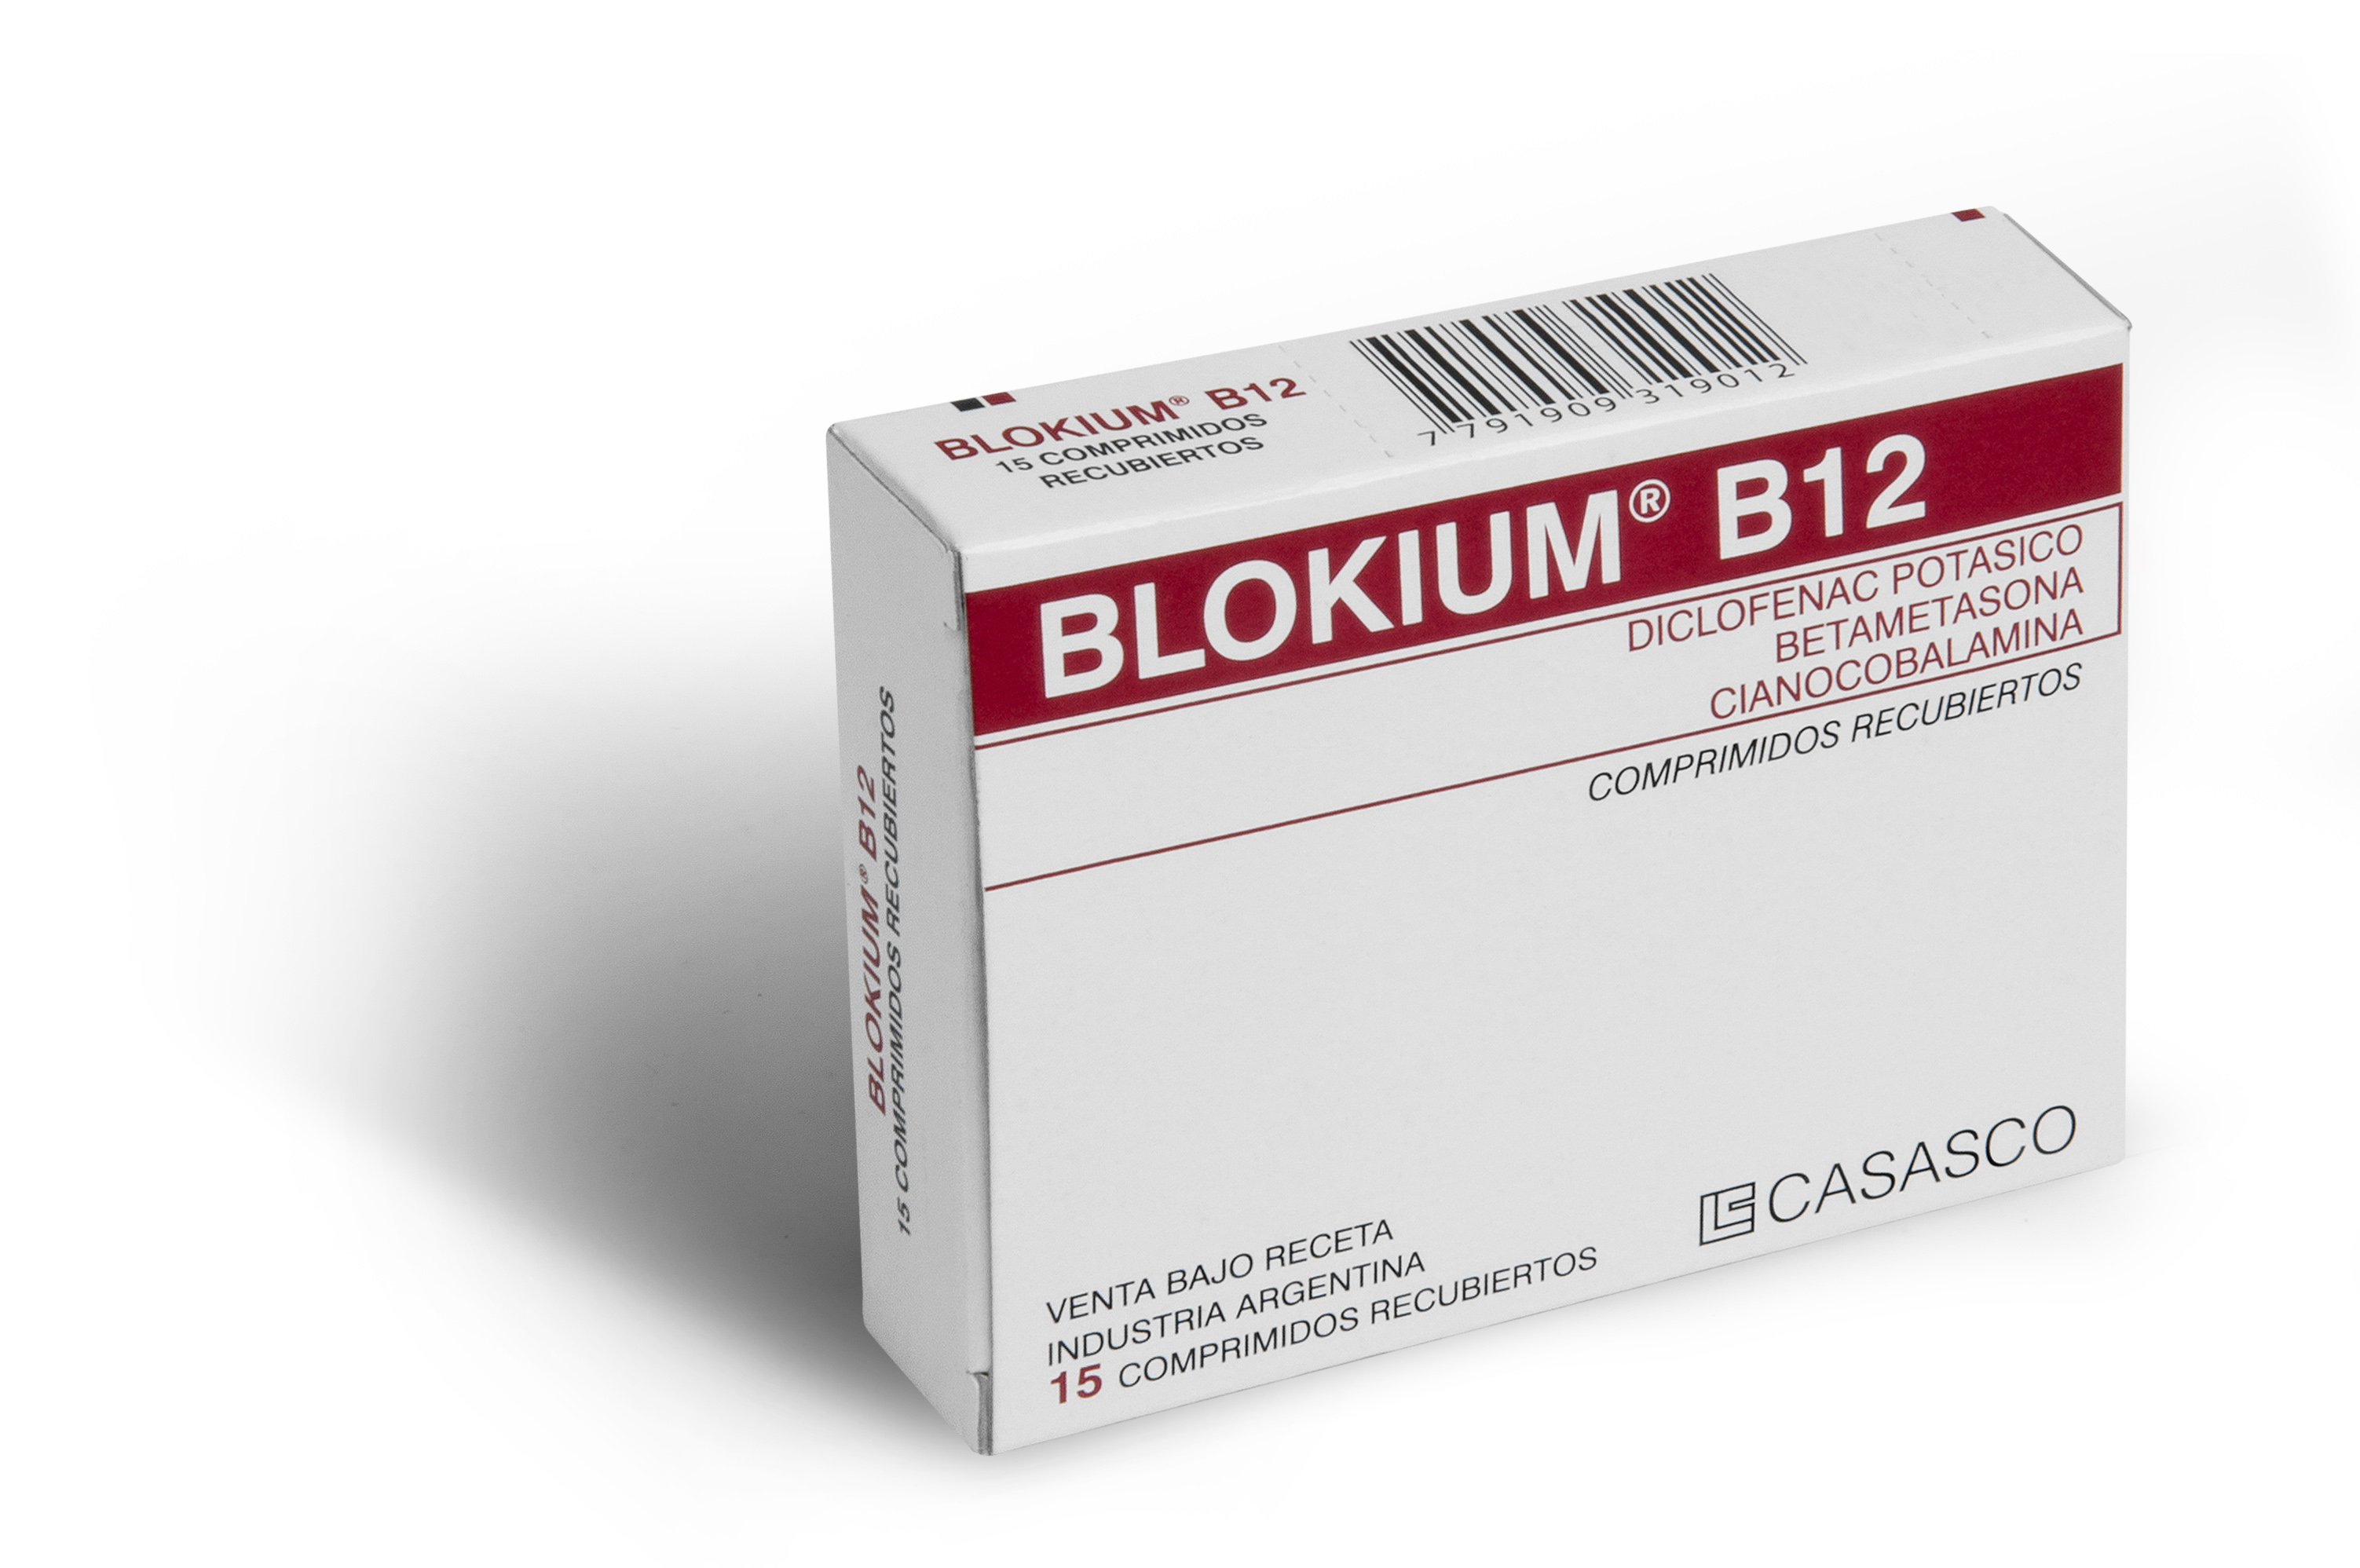 ბლოკიუმ B12 / Blokium B12